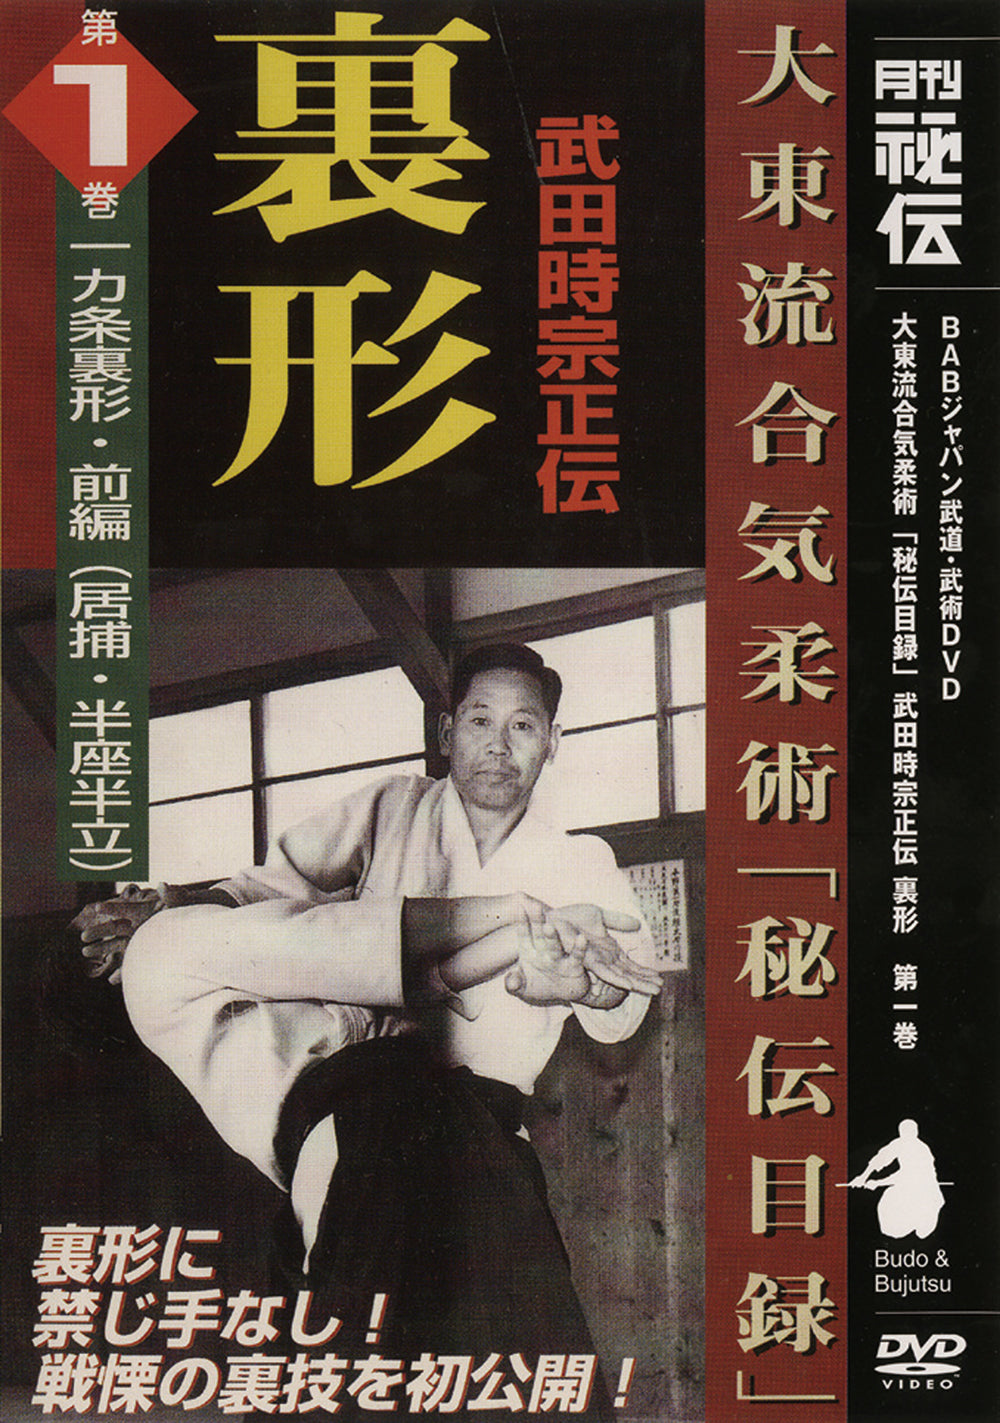 Daito Ryu Aikijujutsu: Técnicas Ikkajo Ura DVD 1